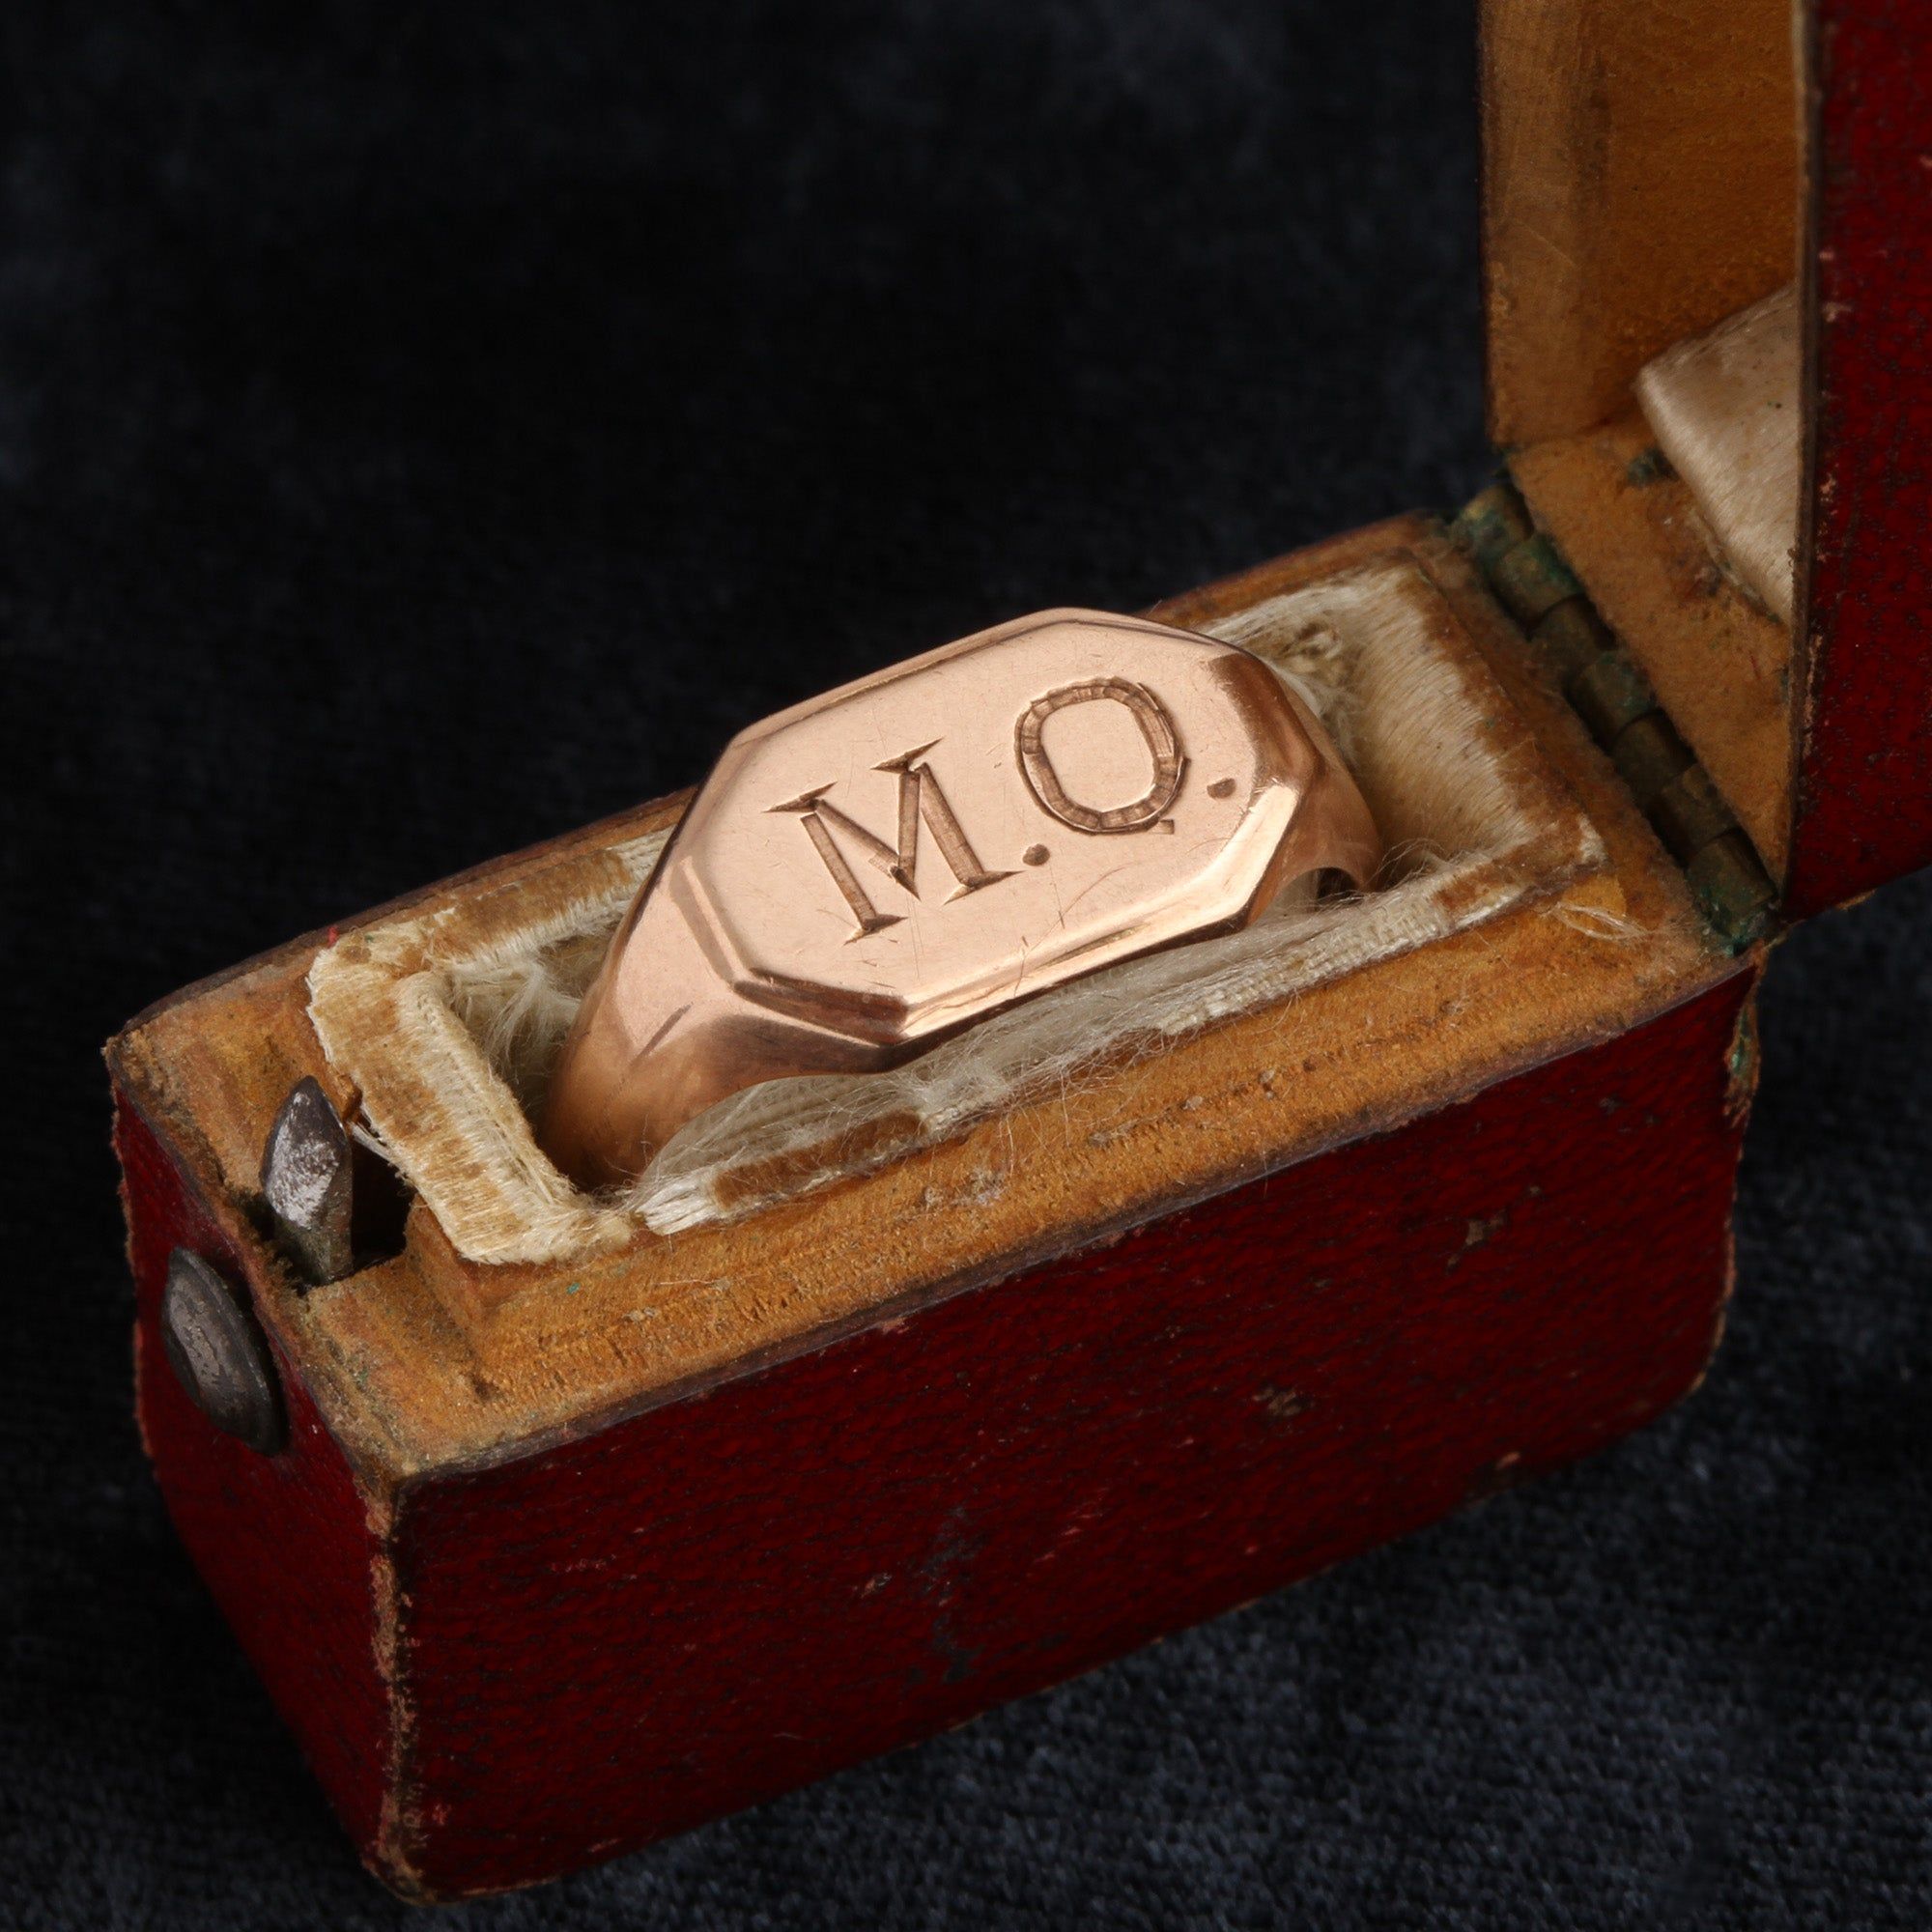 1920s "M.O." Signet Ring